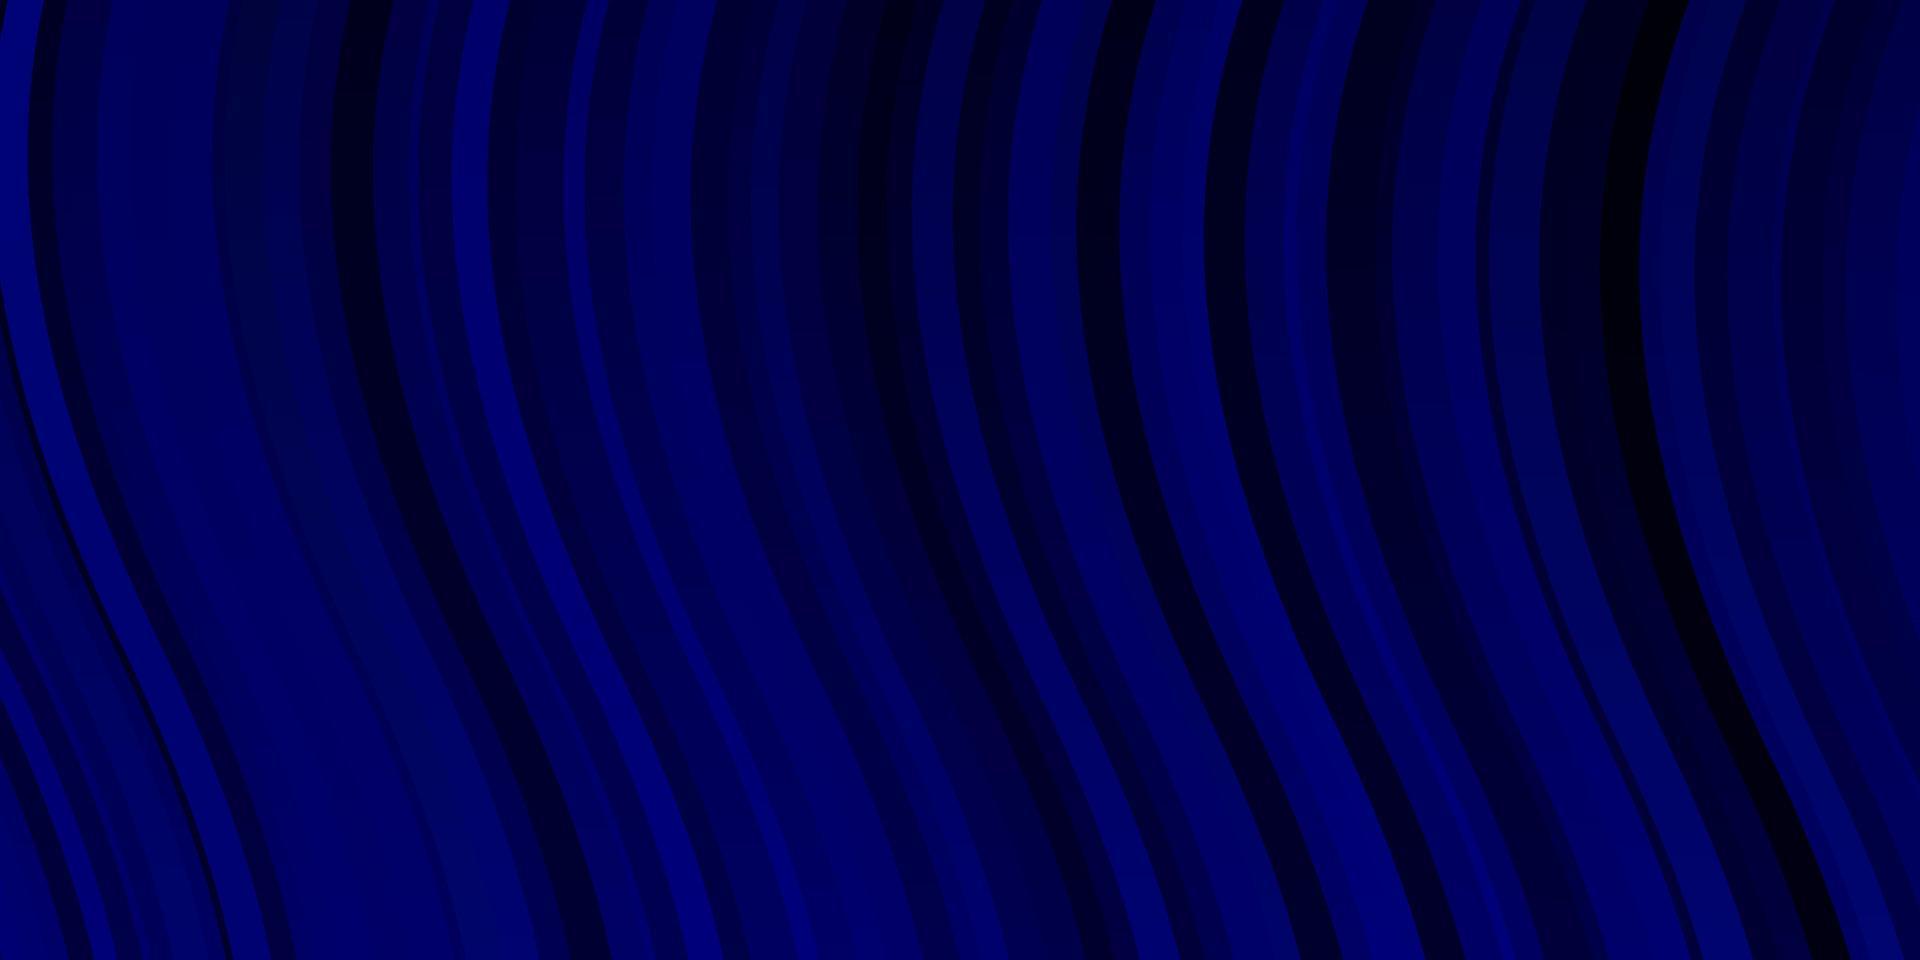 mörkblå vektormönster med linjer. vektor